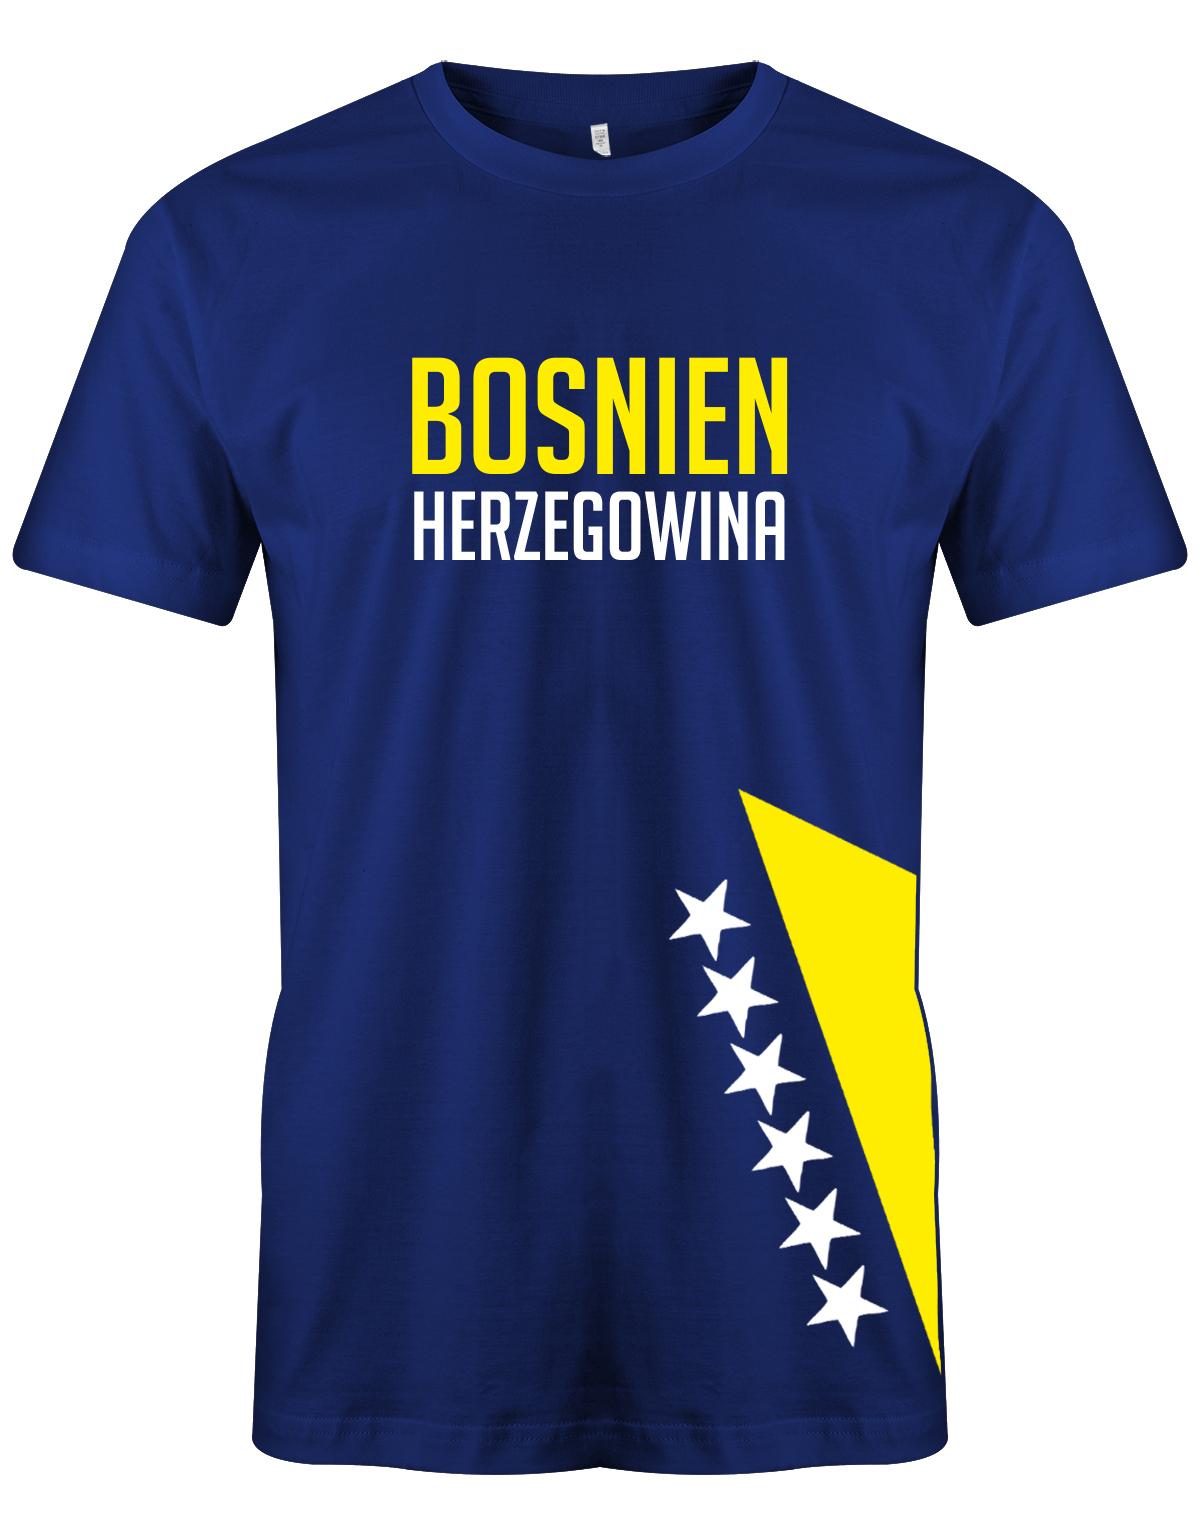 Bosnien-herzegowina-Herren-Shirt-Royalblau